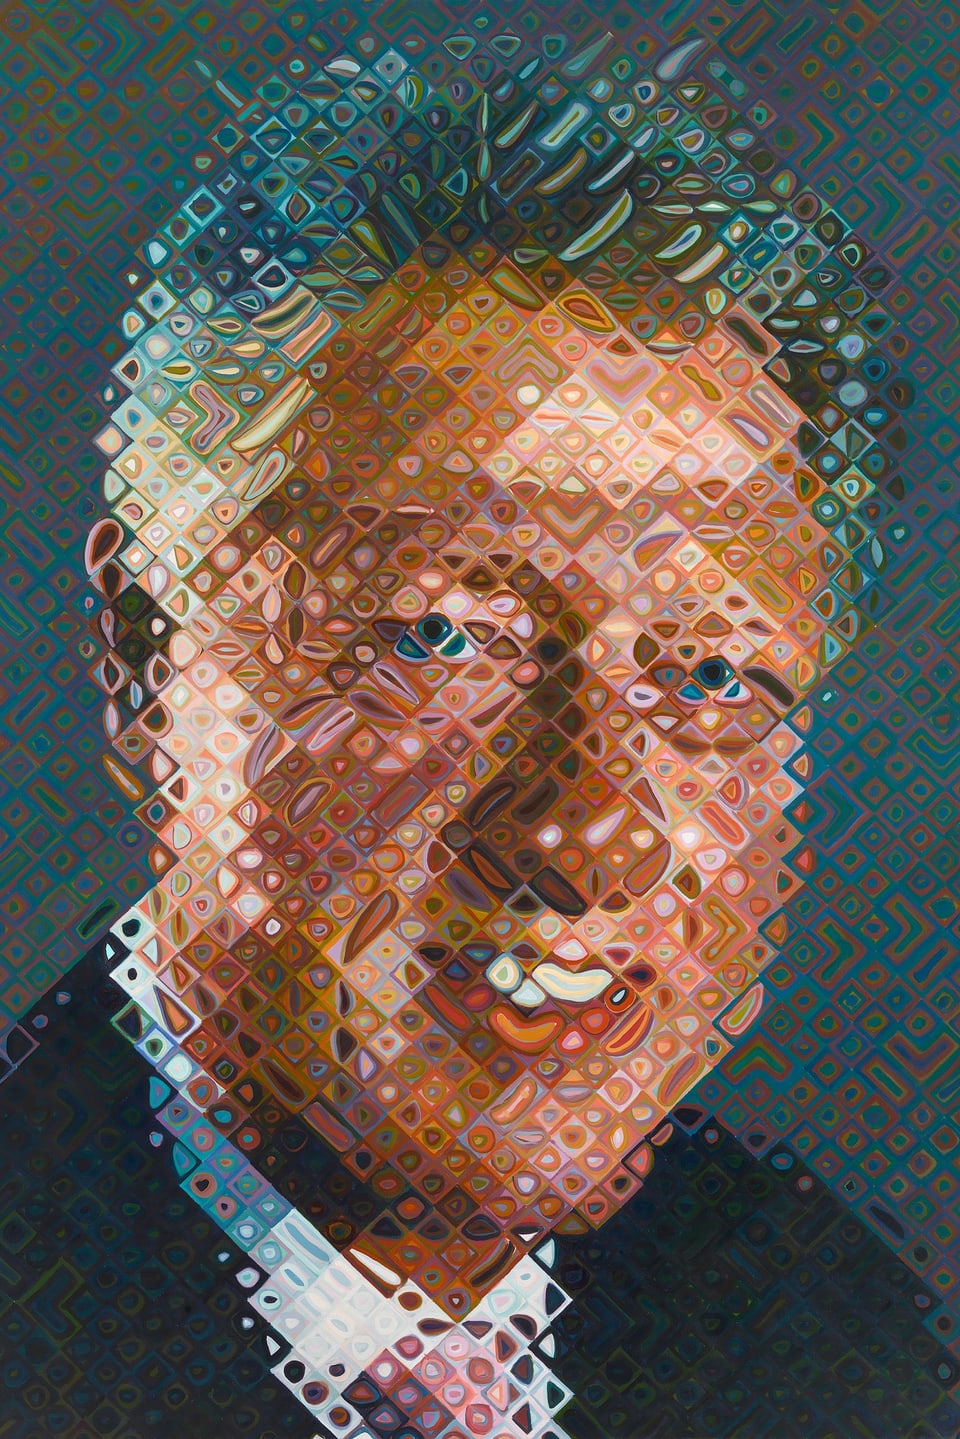 Bill Clinton im Porträt.